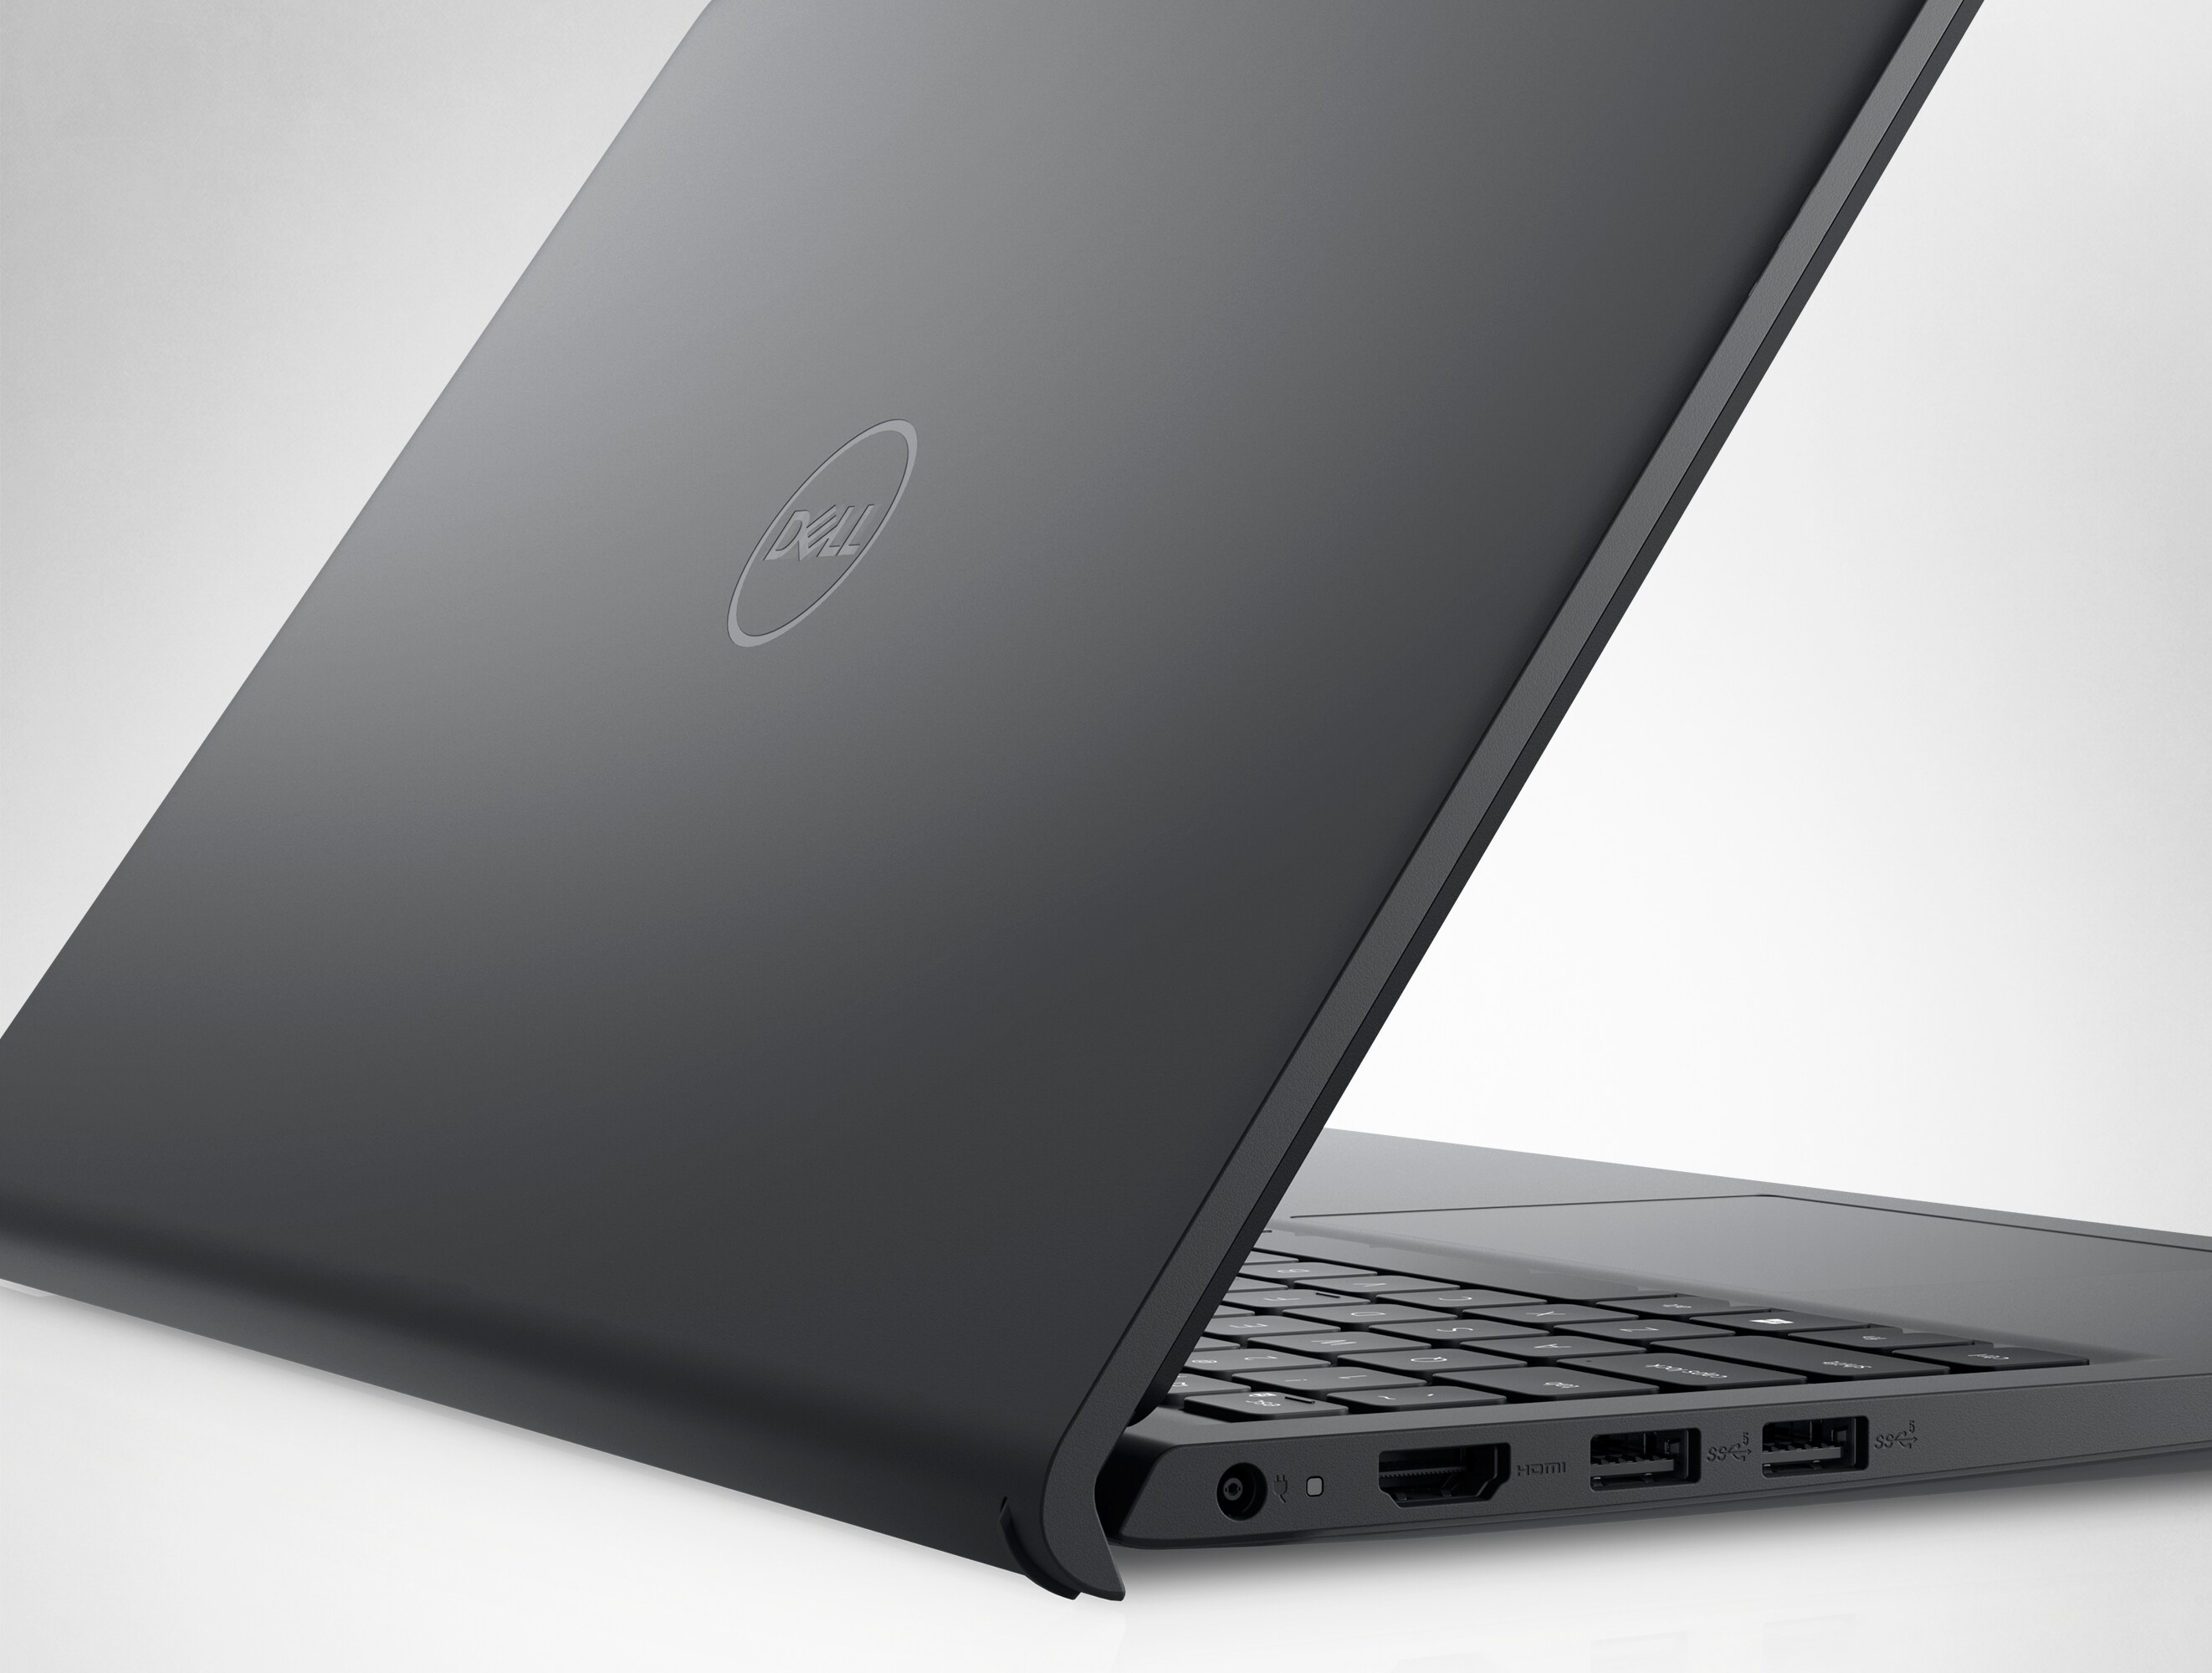 Photo d’un ordinateur portable Dell Inspiron 15 3521 ouvert avec l’arrière et le logo Dell visibles.